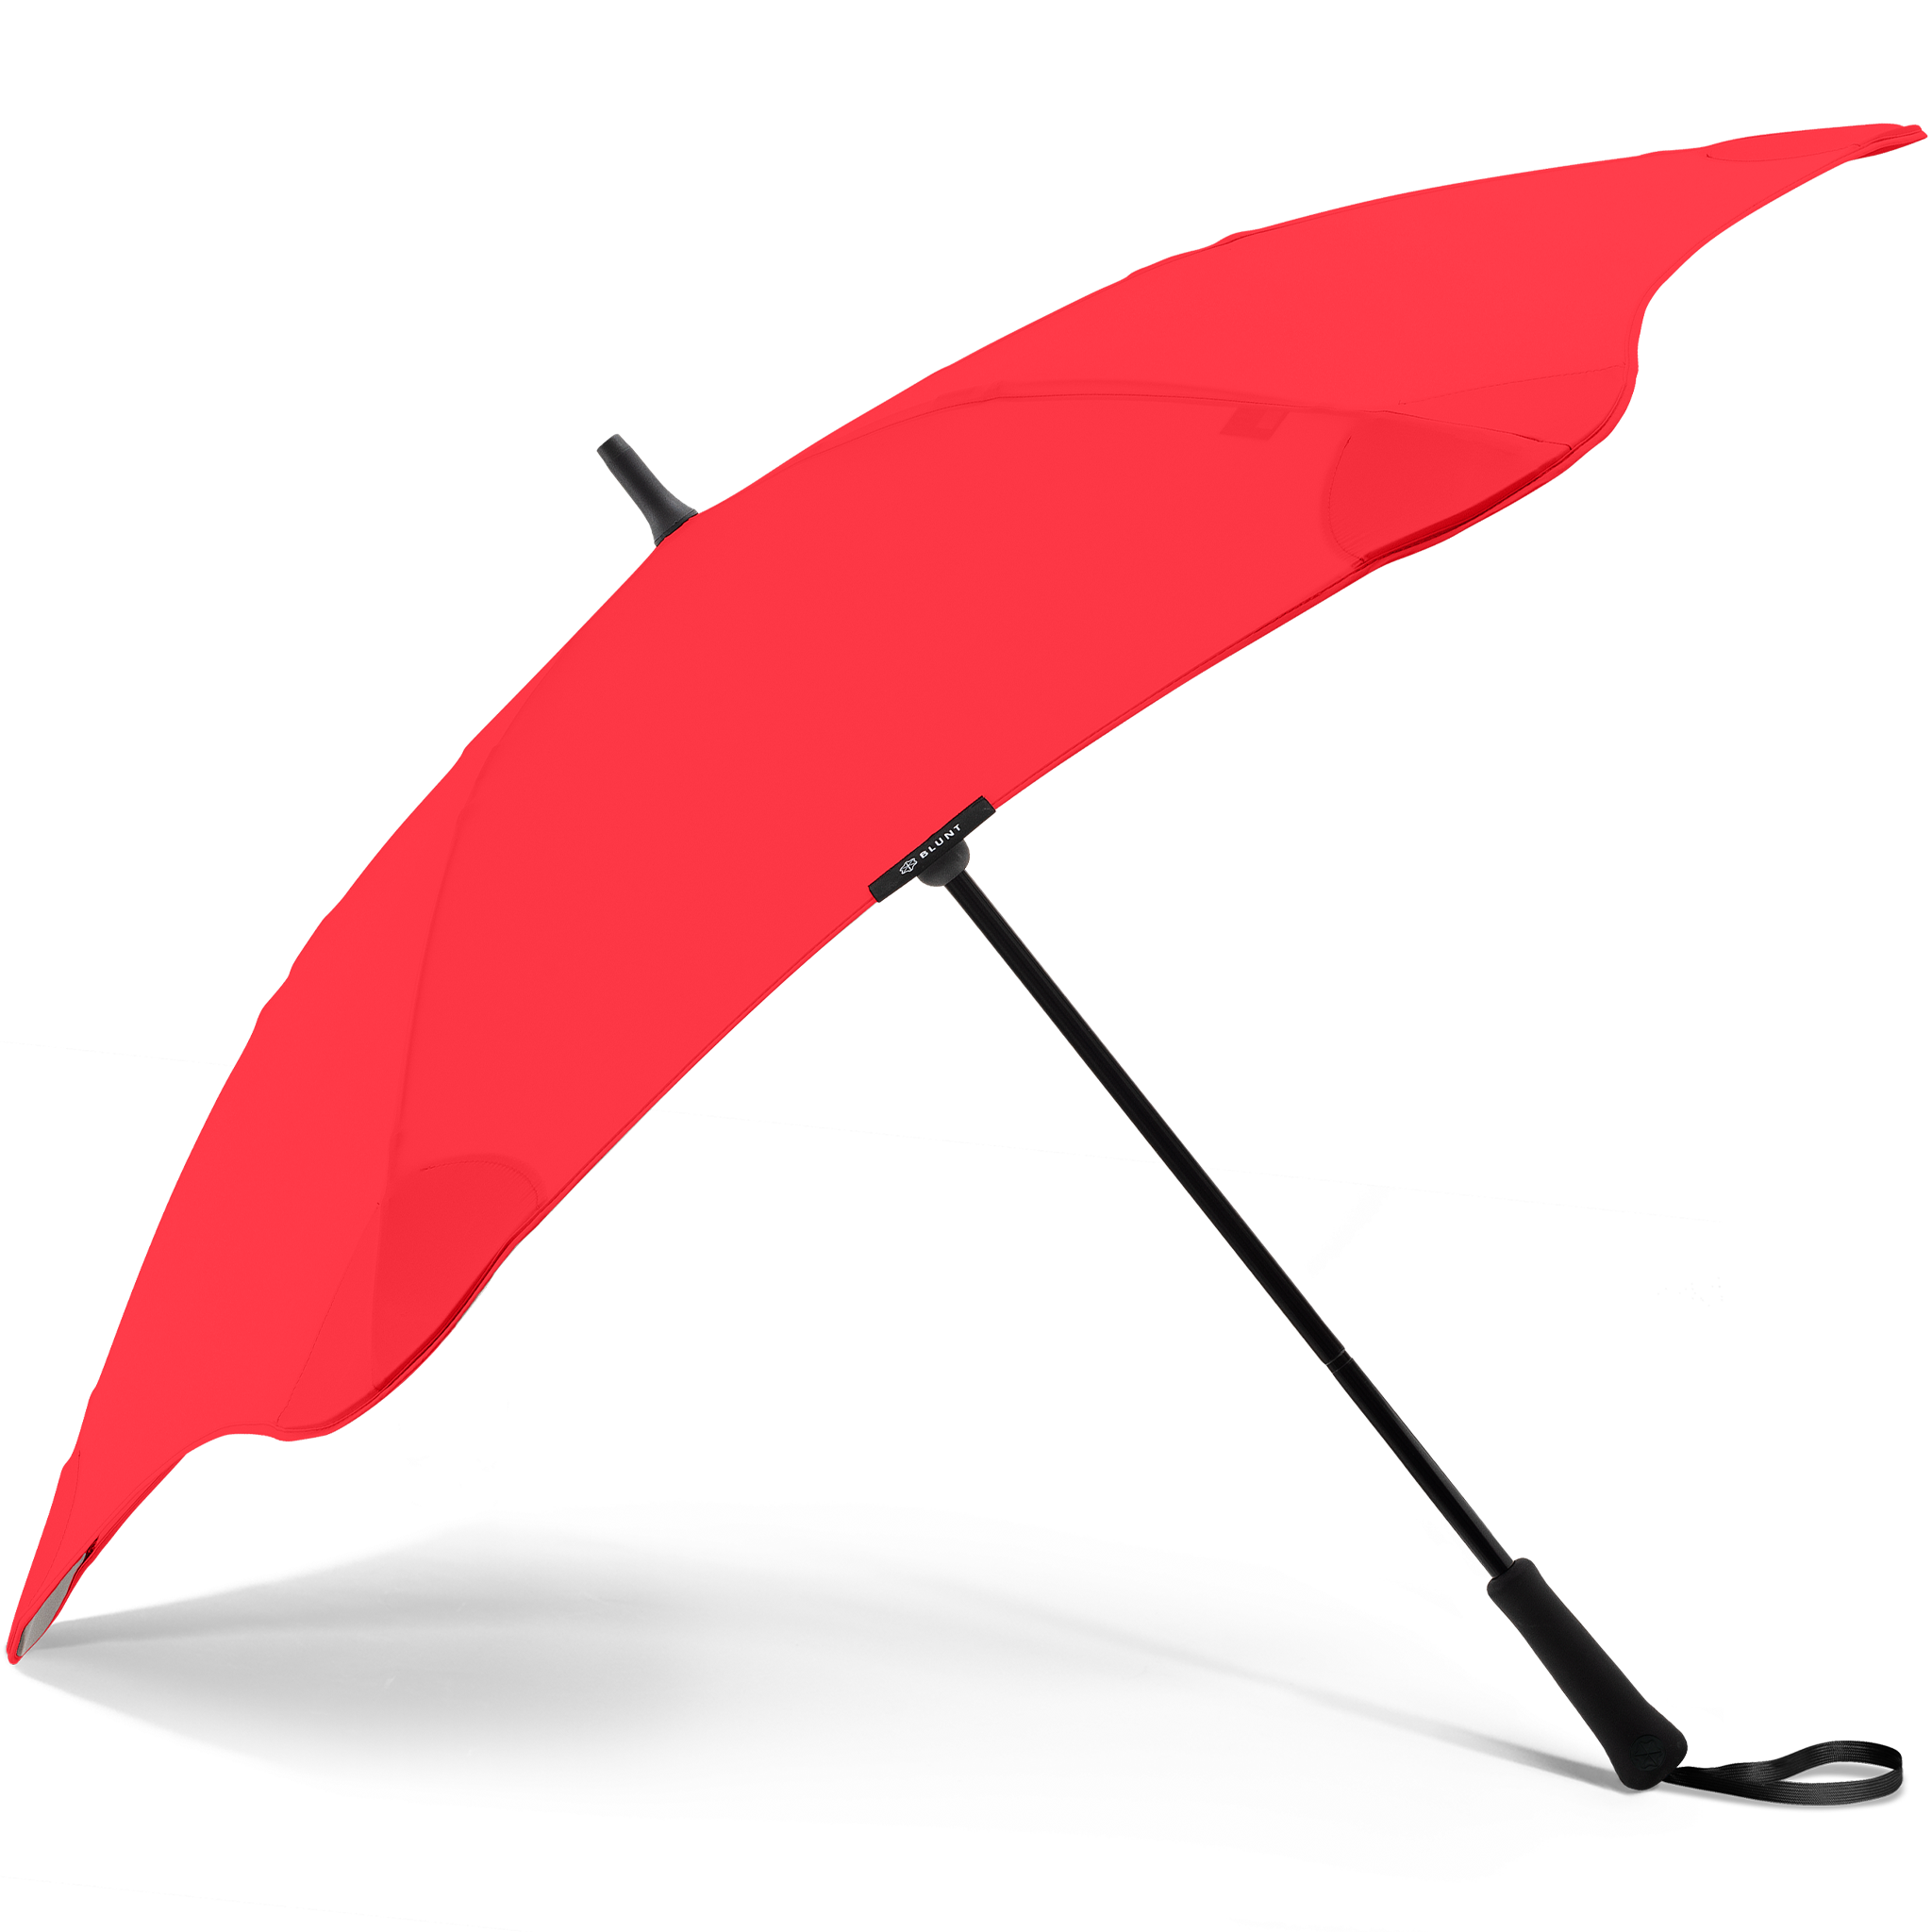 Blunt Umbrellas Classic